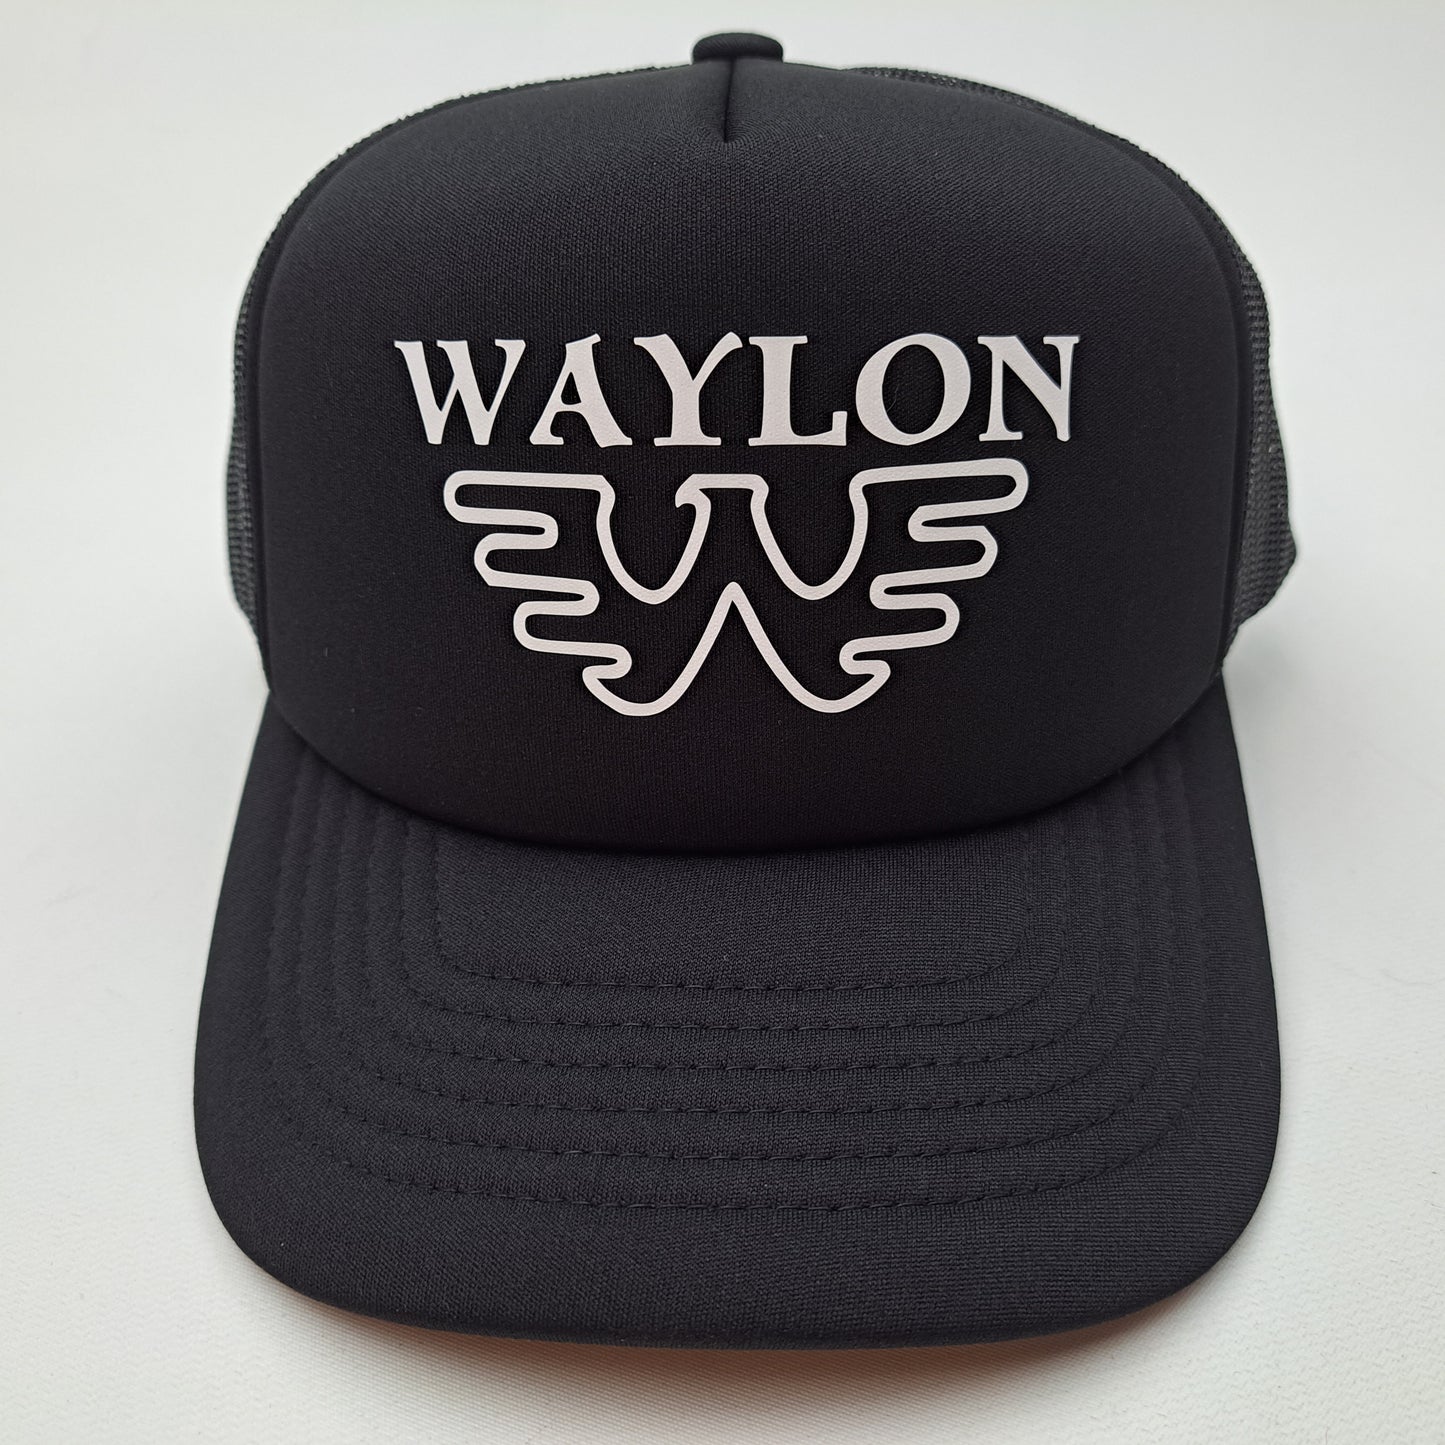 Waylon Jennings Foam Mesh Trucker Black snapback